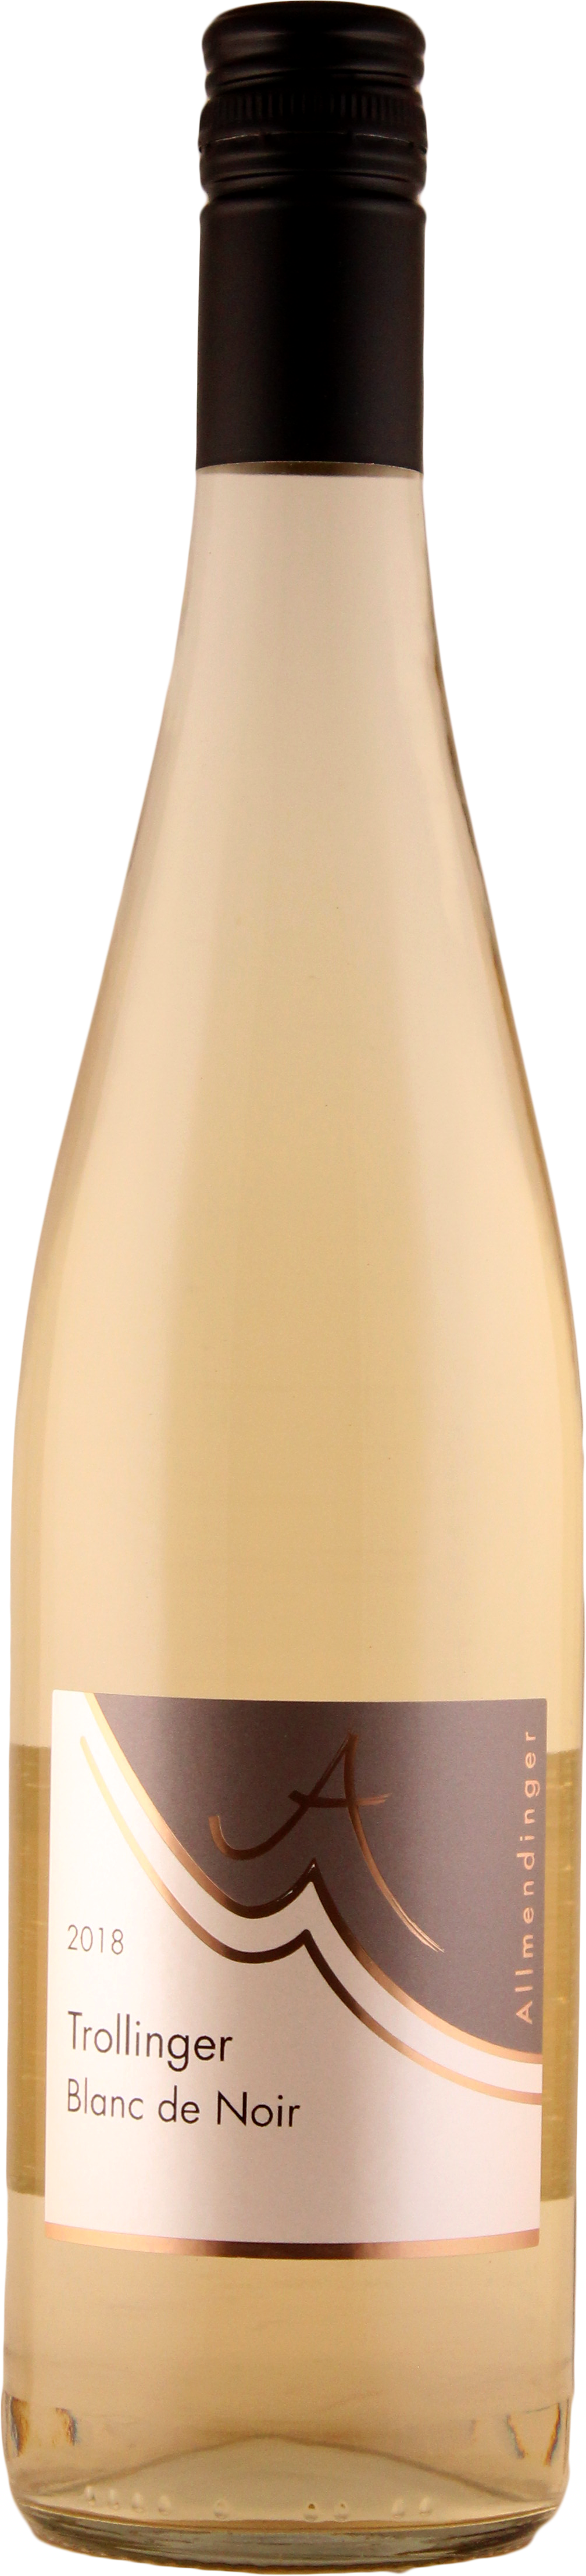 2018 Trollinger Blanc de Noir 0,75 L - Weingut Allmendinger